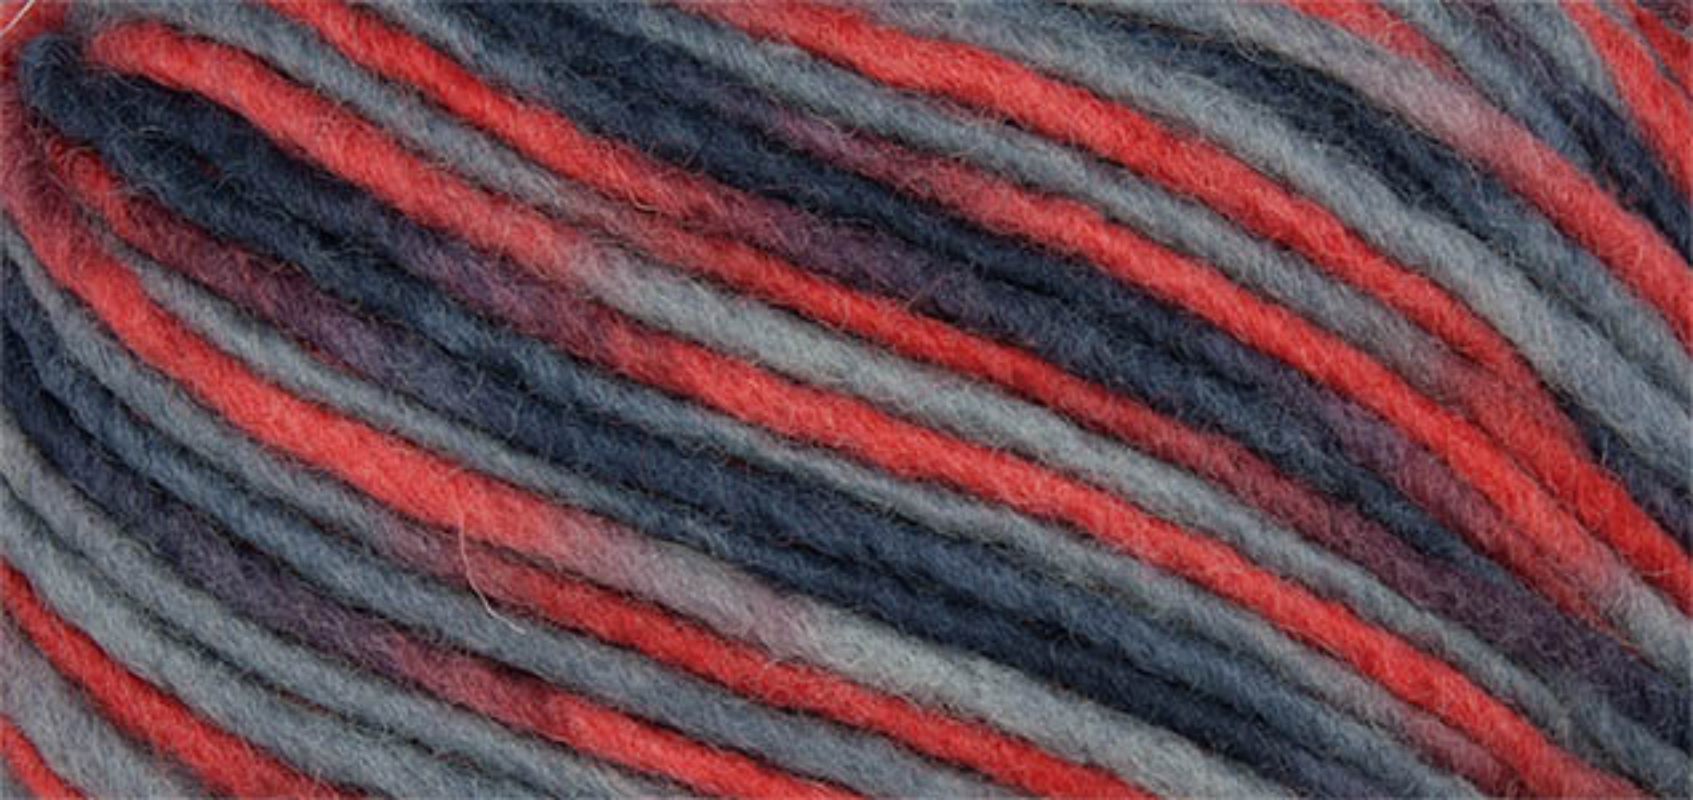 Filz Wolle Color Linie 231 von ONline 0118 - schwarz/grau/rot